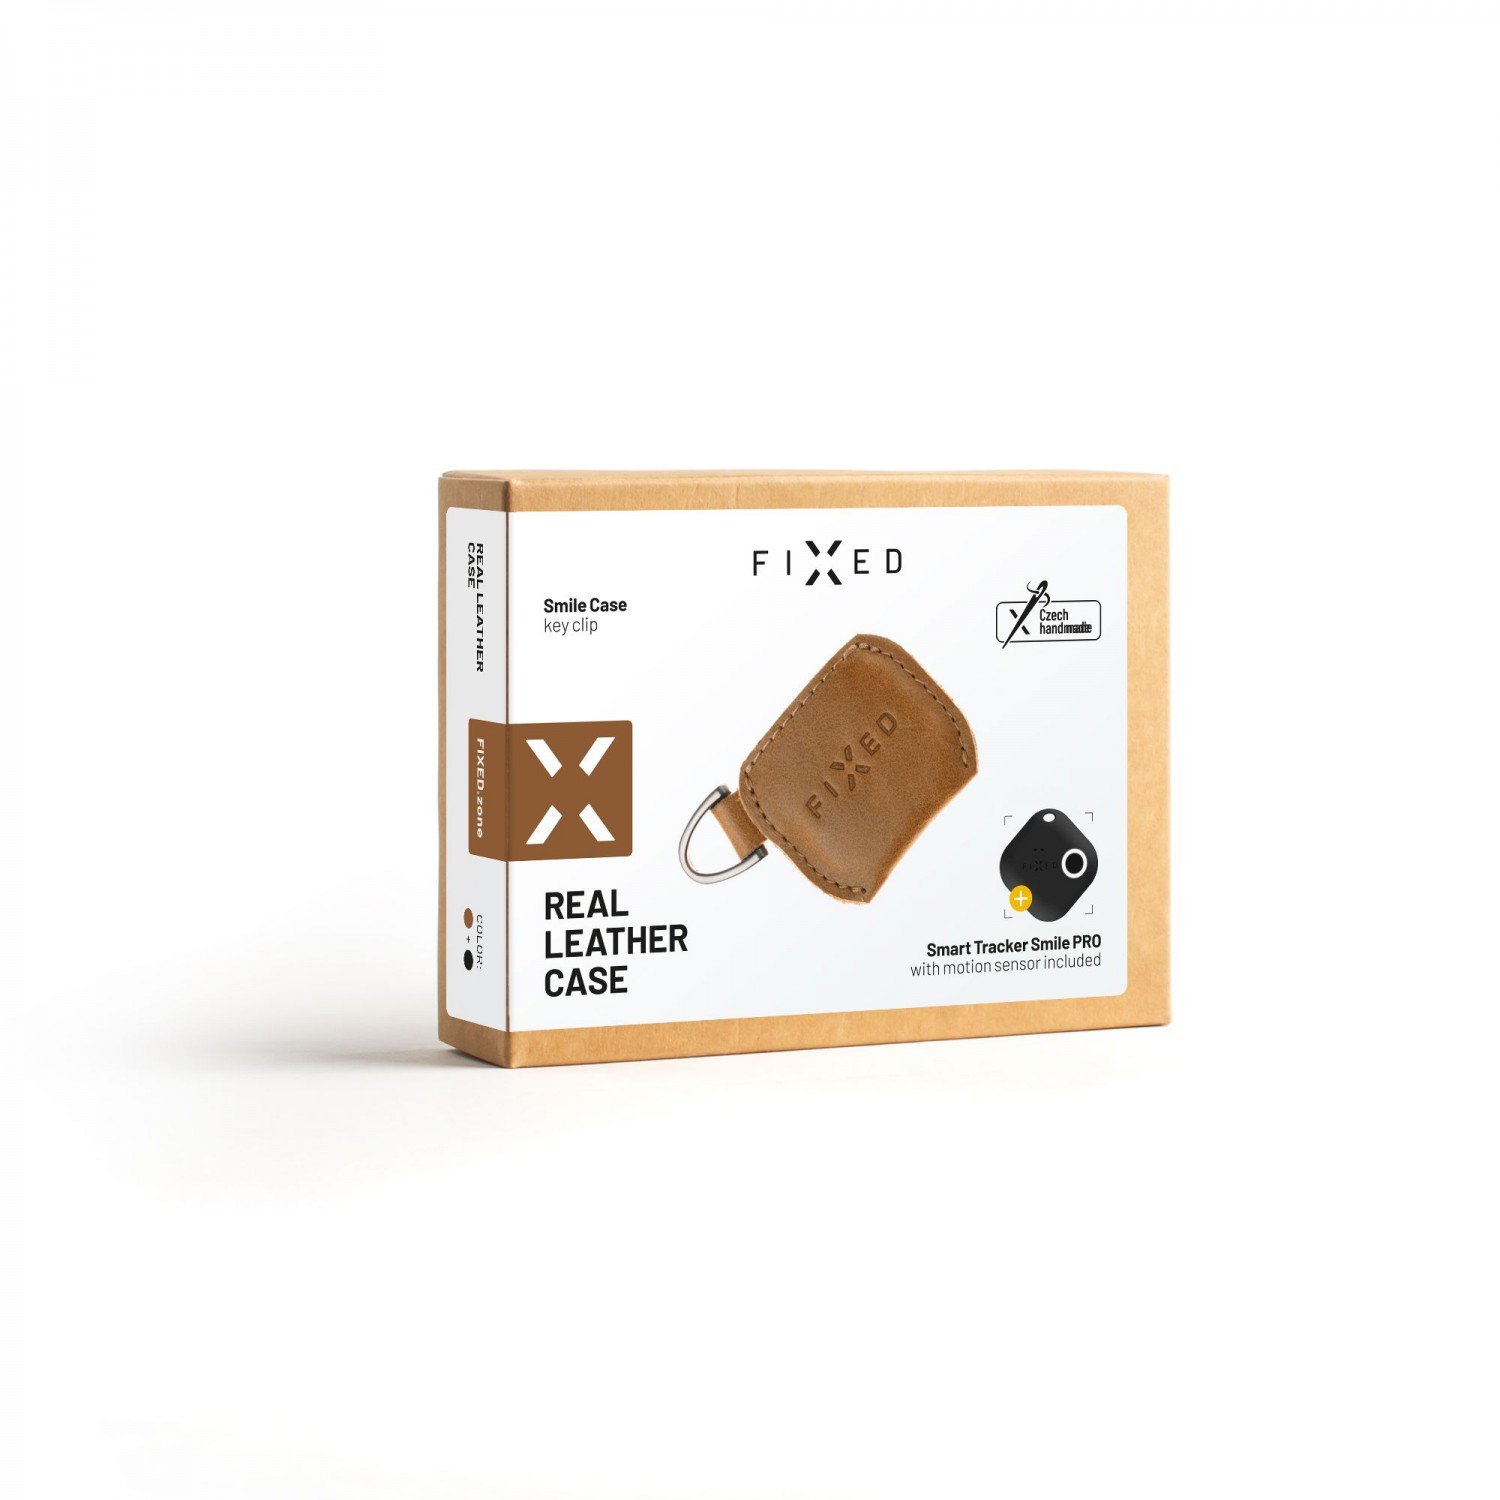 Kožené pouzdro FIXED Smile Case se smart trackerem FIXED Smile Pro, hnědá